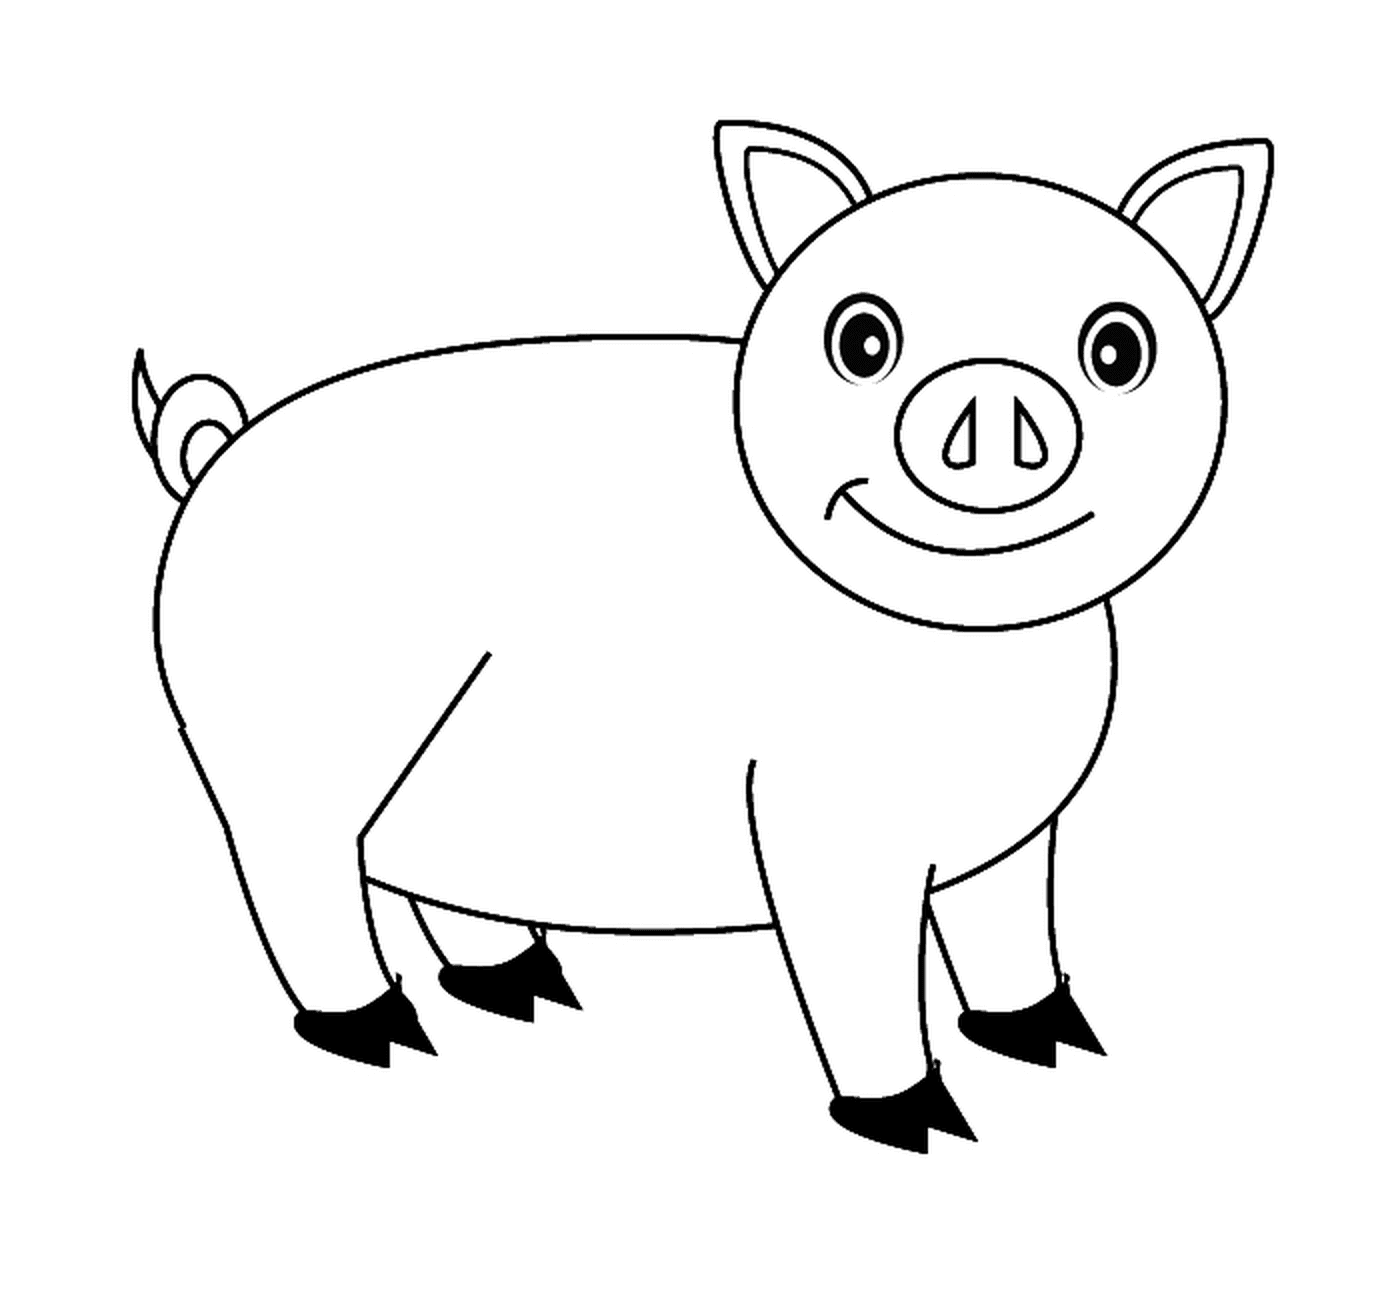  एक प्यारा सूअर 